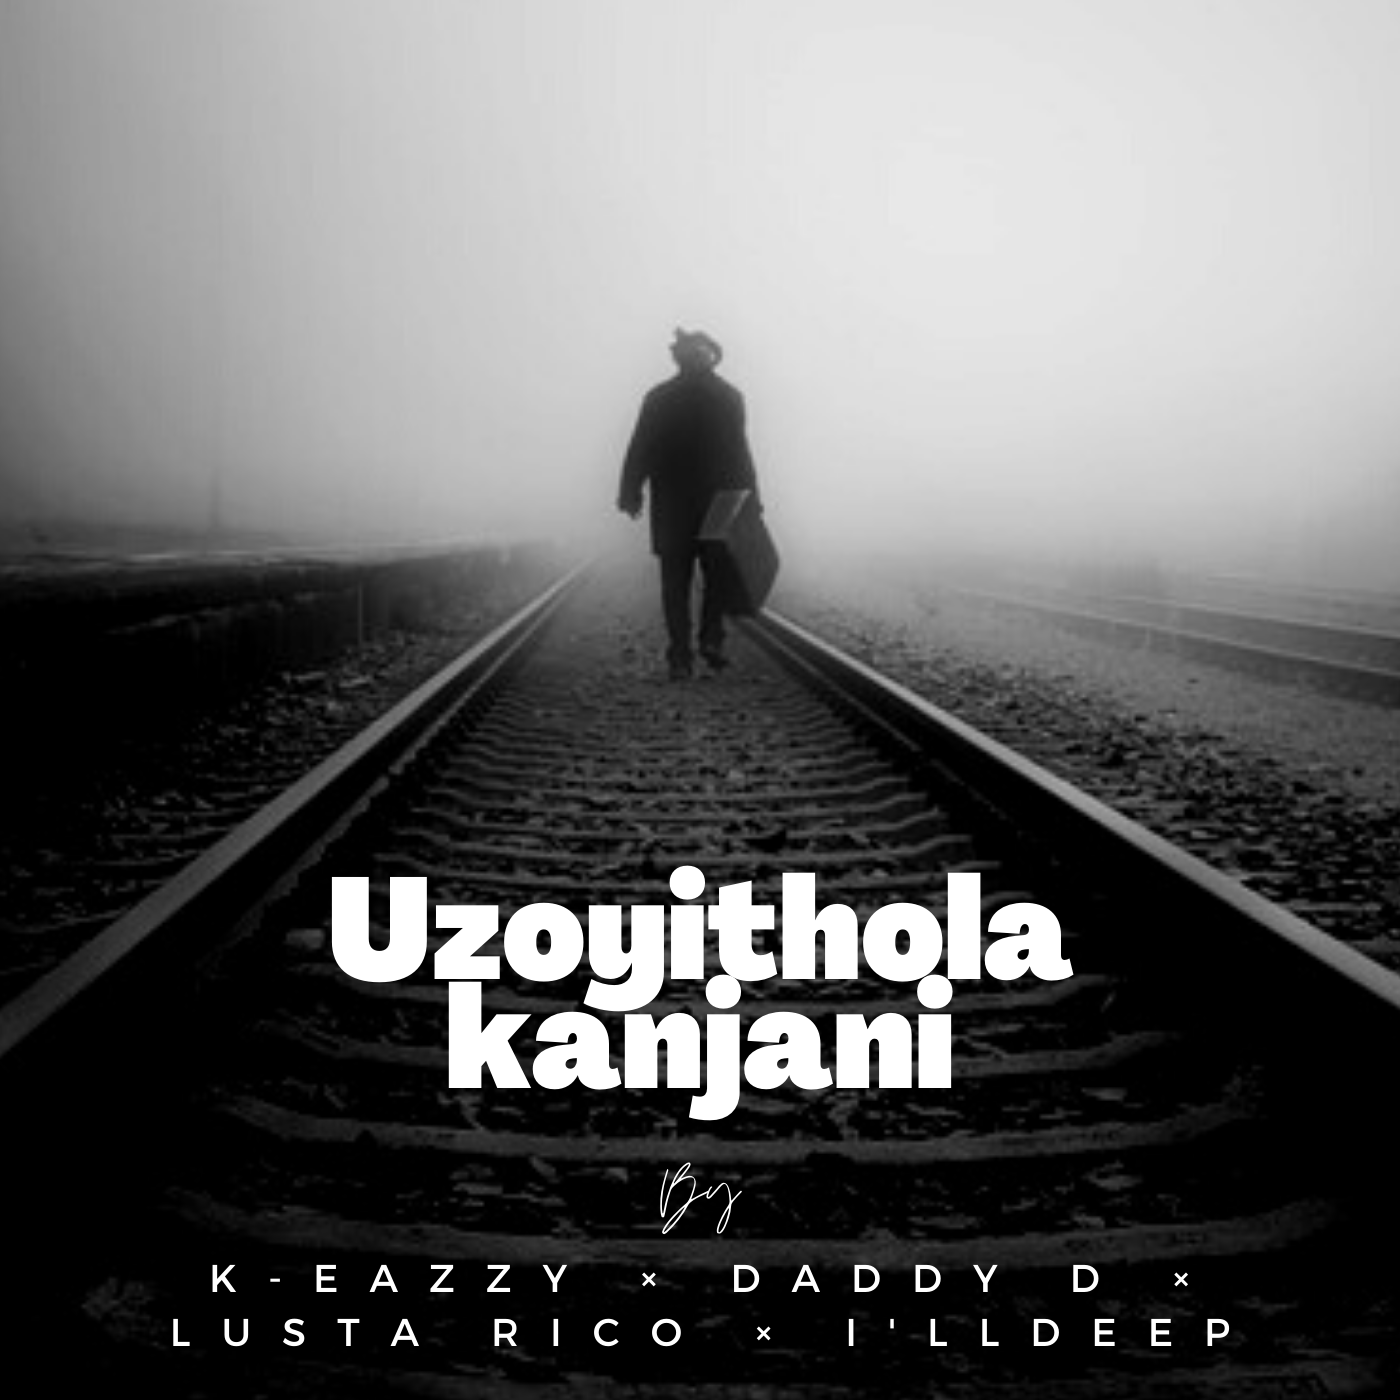 Uzoyithola kanjani Image